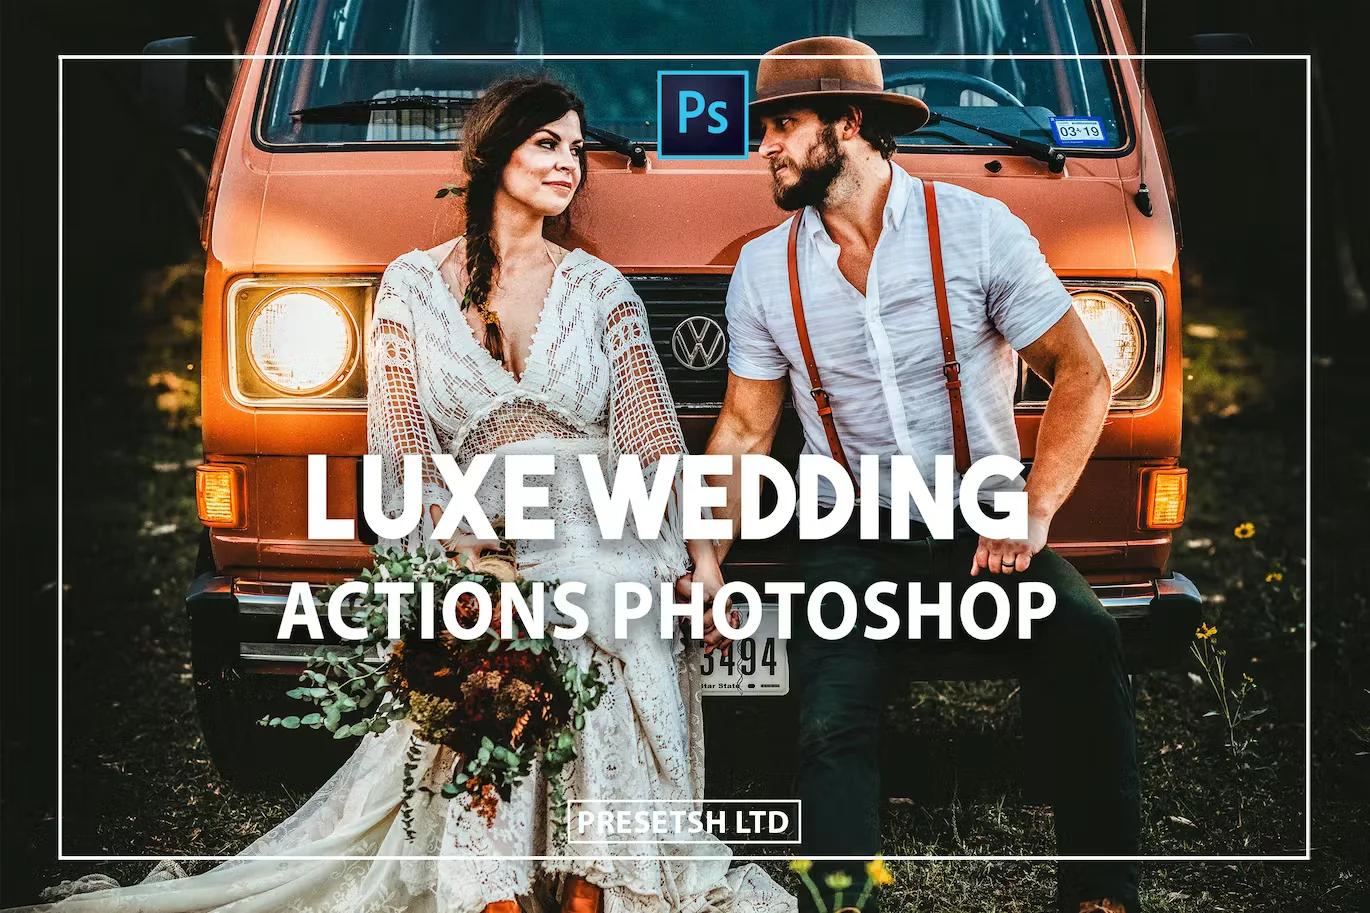 Luxe Weddings Photoshop Actions